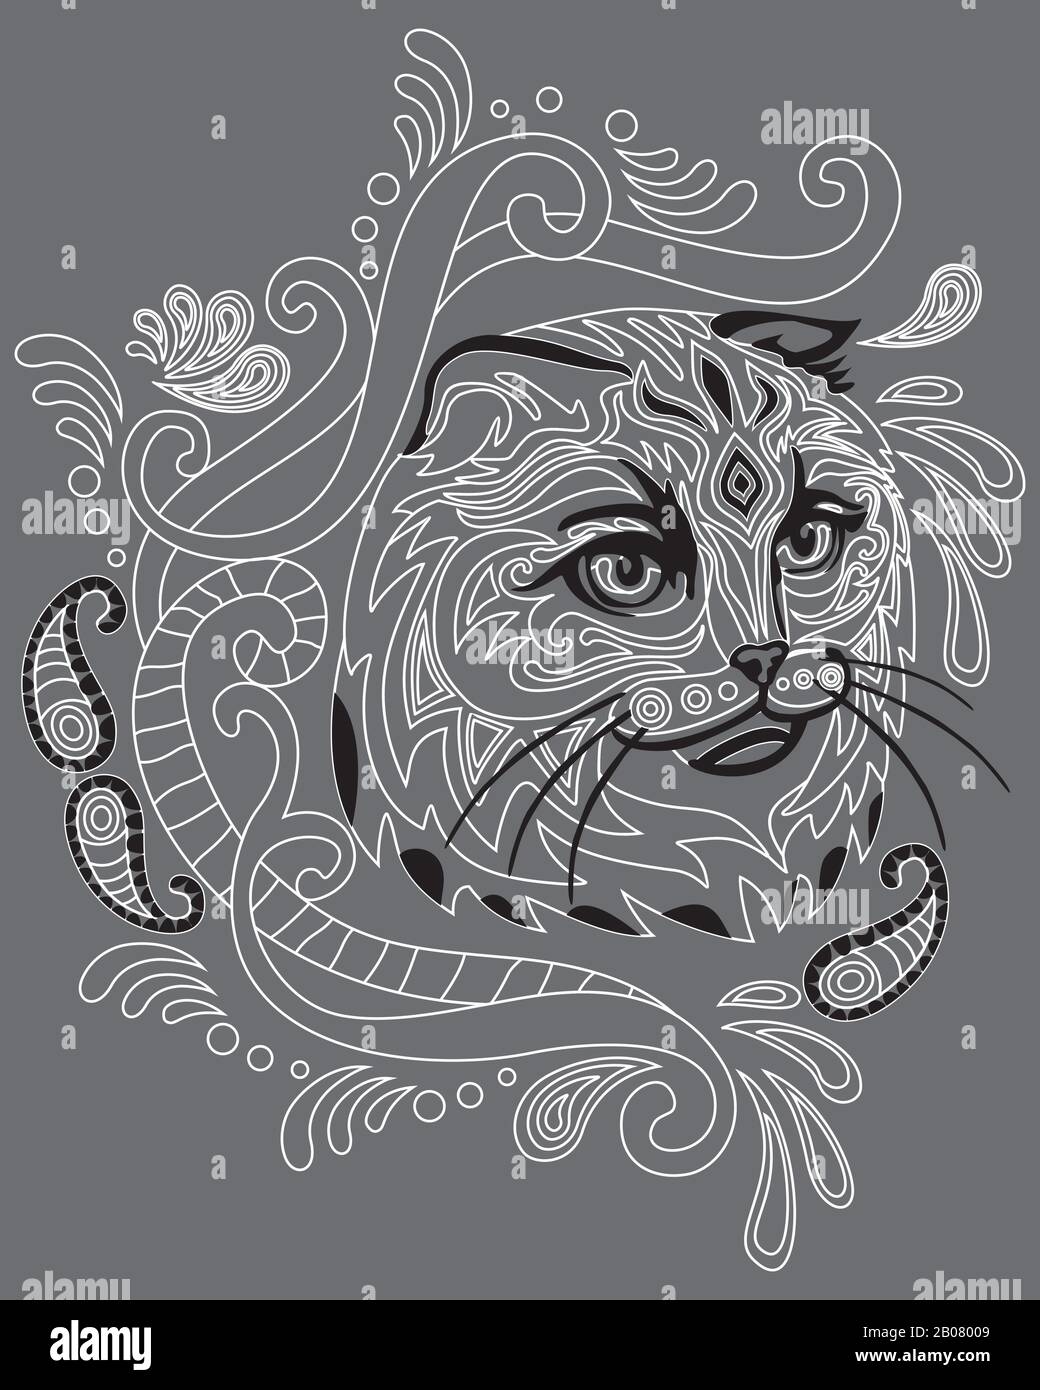 Monochromes abstraktes Doodle-Porträt von Scotish Fold Cat. Dekorative Vektorgrafiken in weißen und schwarzen Farben isoliert auf grauem Backgrou Stock Vektor